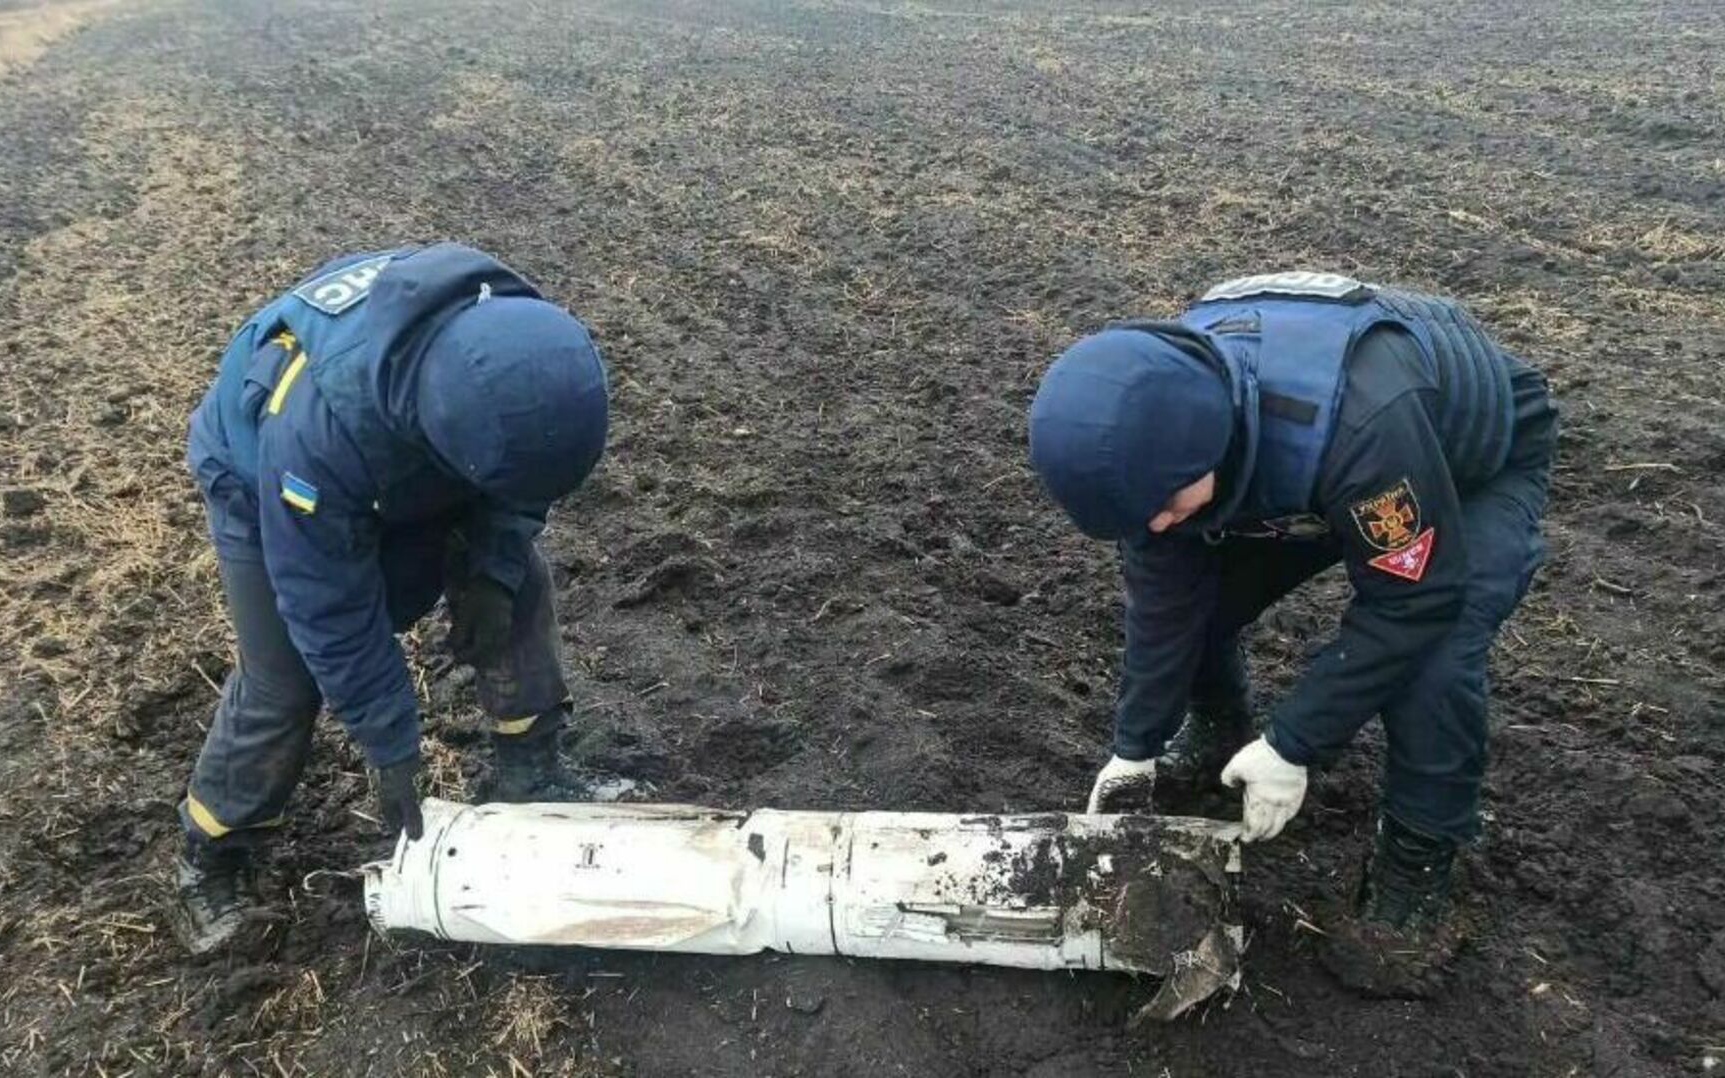 Đặc công Ukraine tới Campuchia đào tạo; Nga bắn hạ máy bay lạ trên bầu trời Crimea